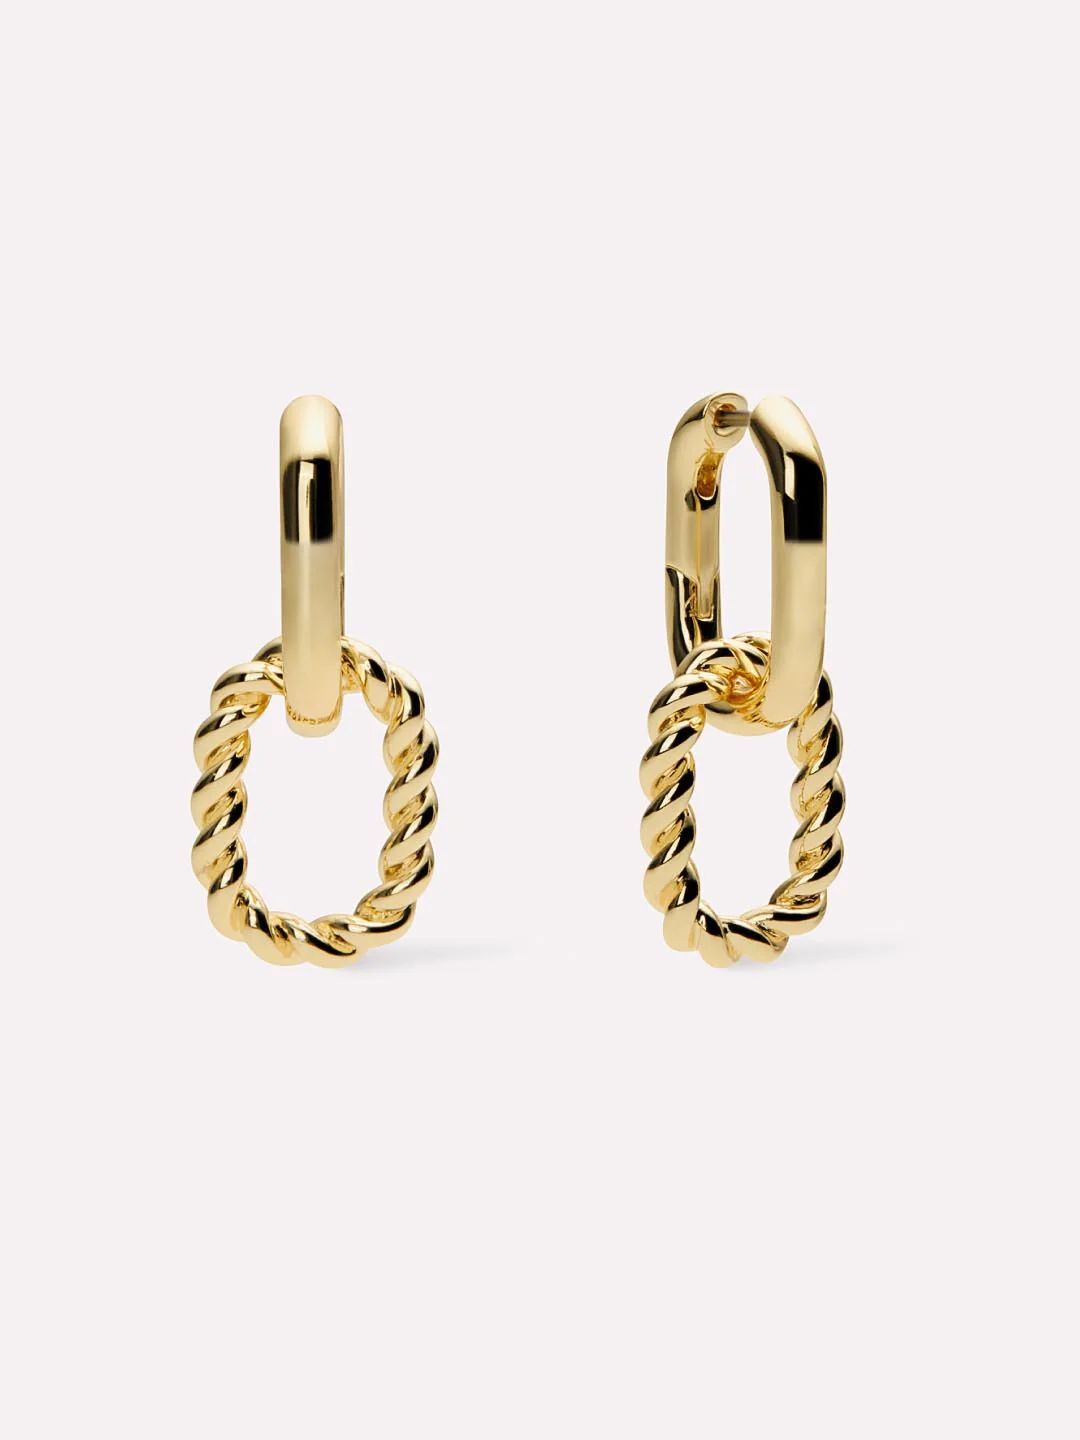 Double Hoop Earrings | Ana Luisa